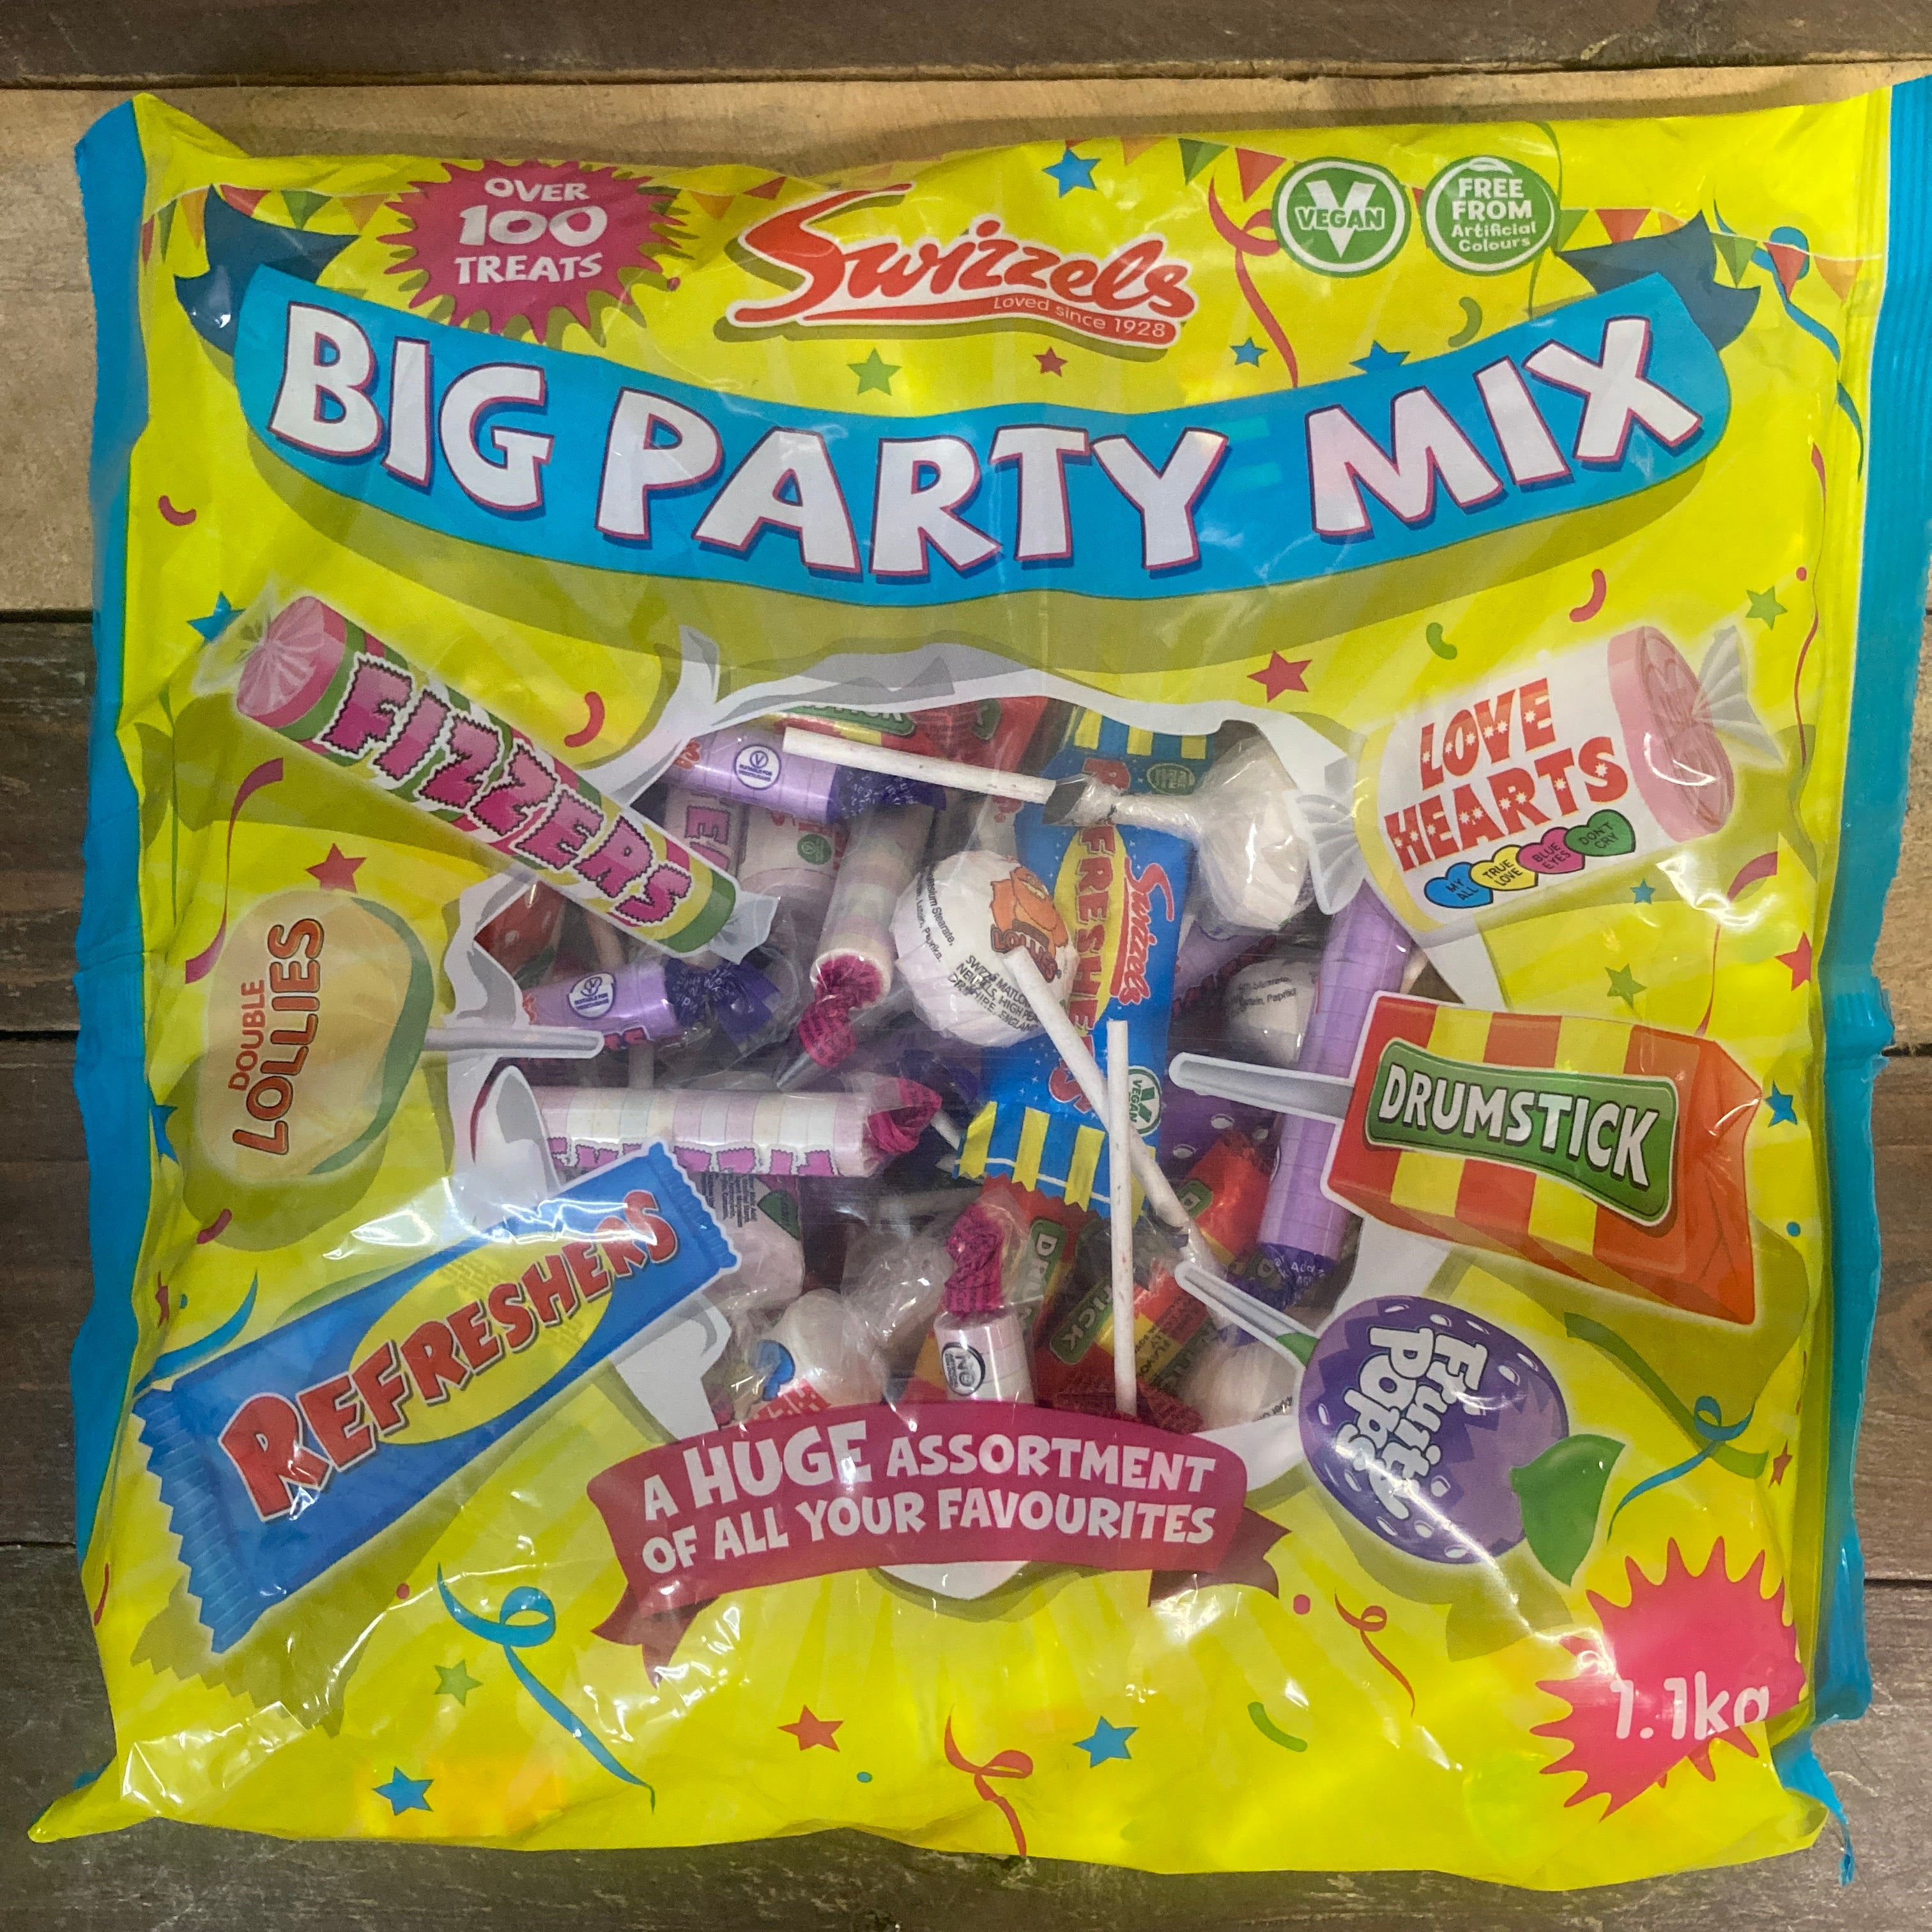 1.1Kg Swizzels Big Party Mix Bag (Over 100 Treats)